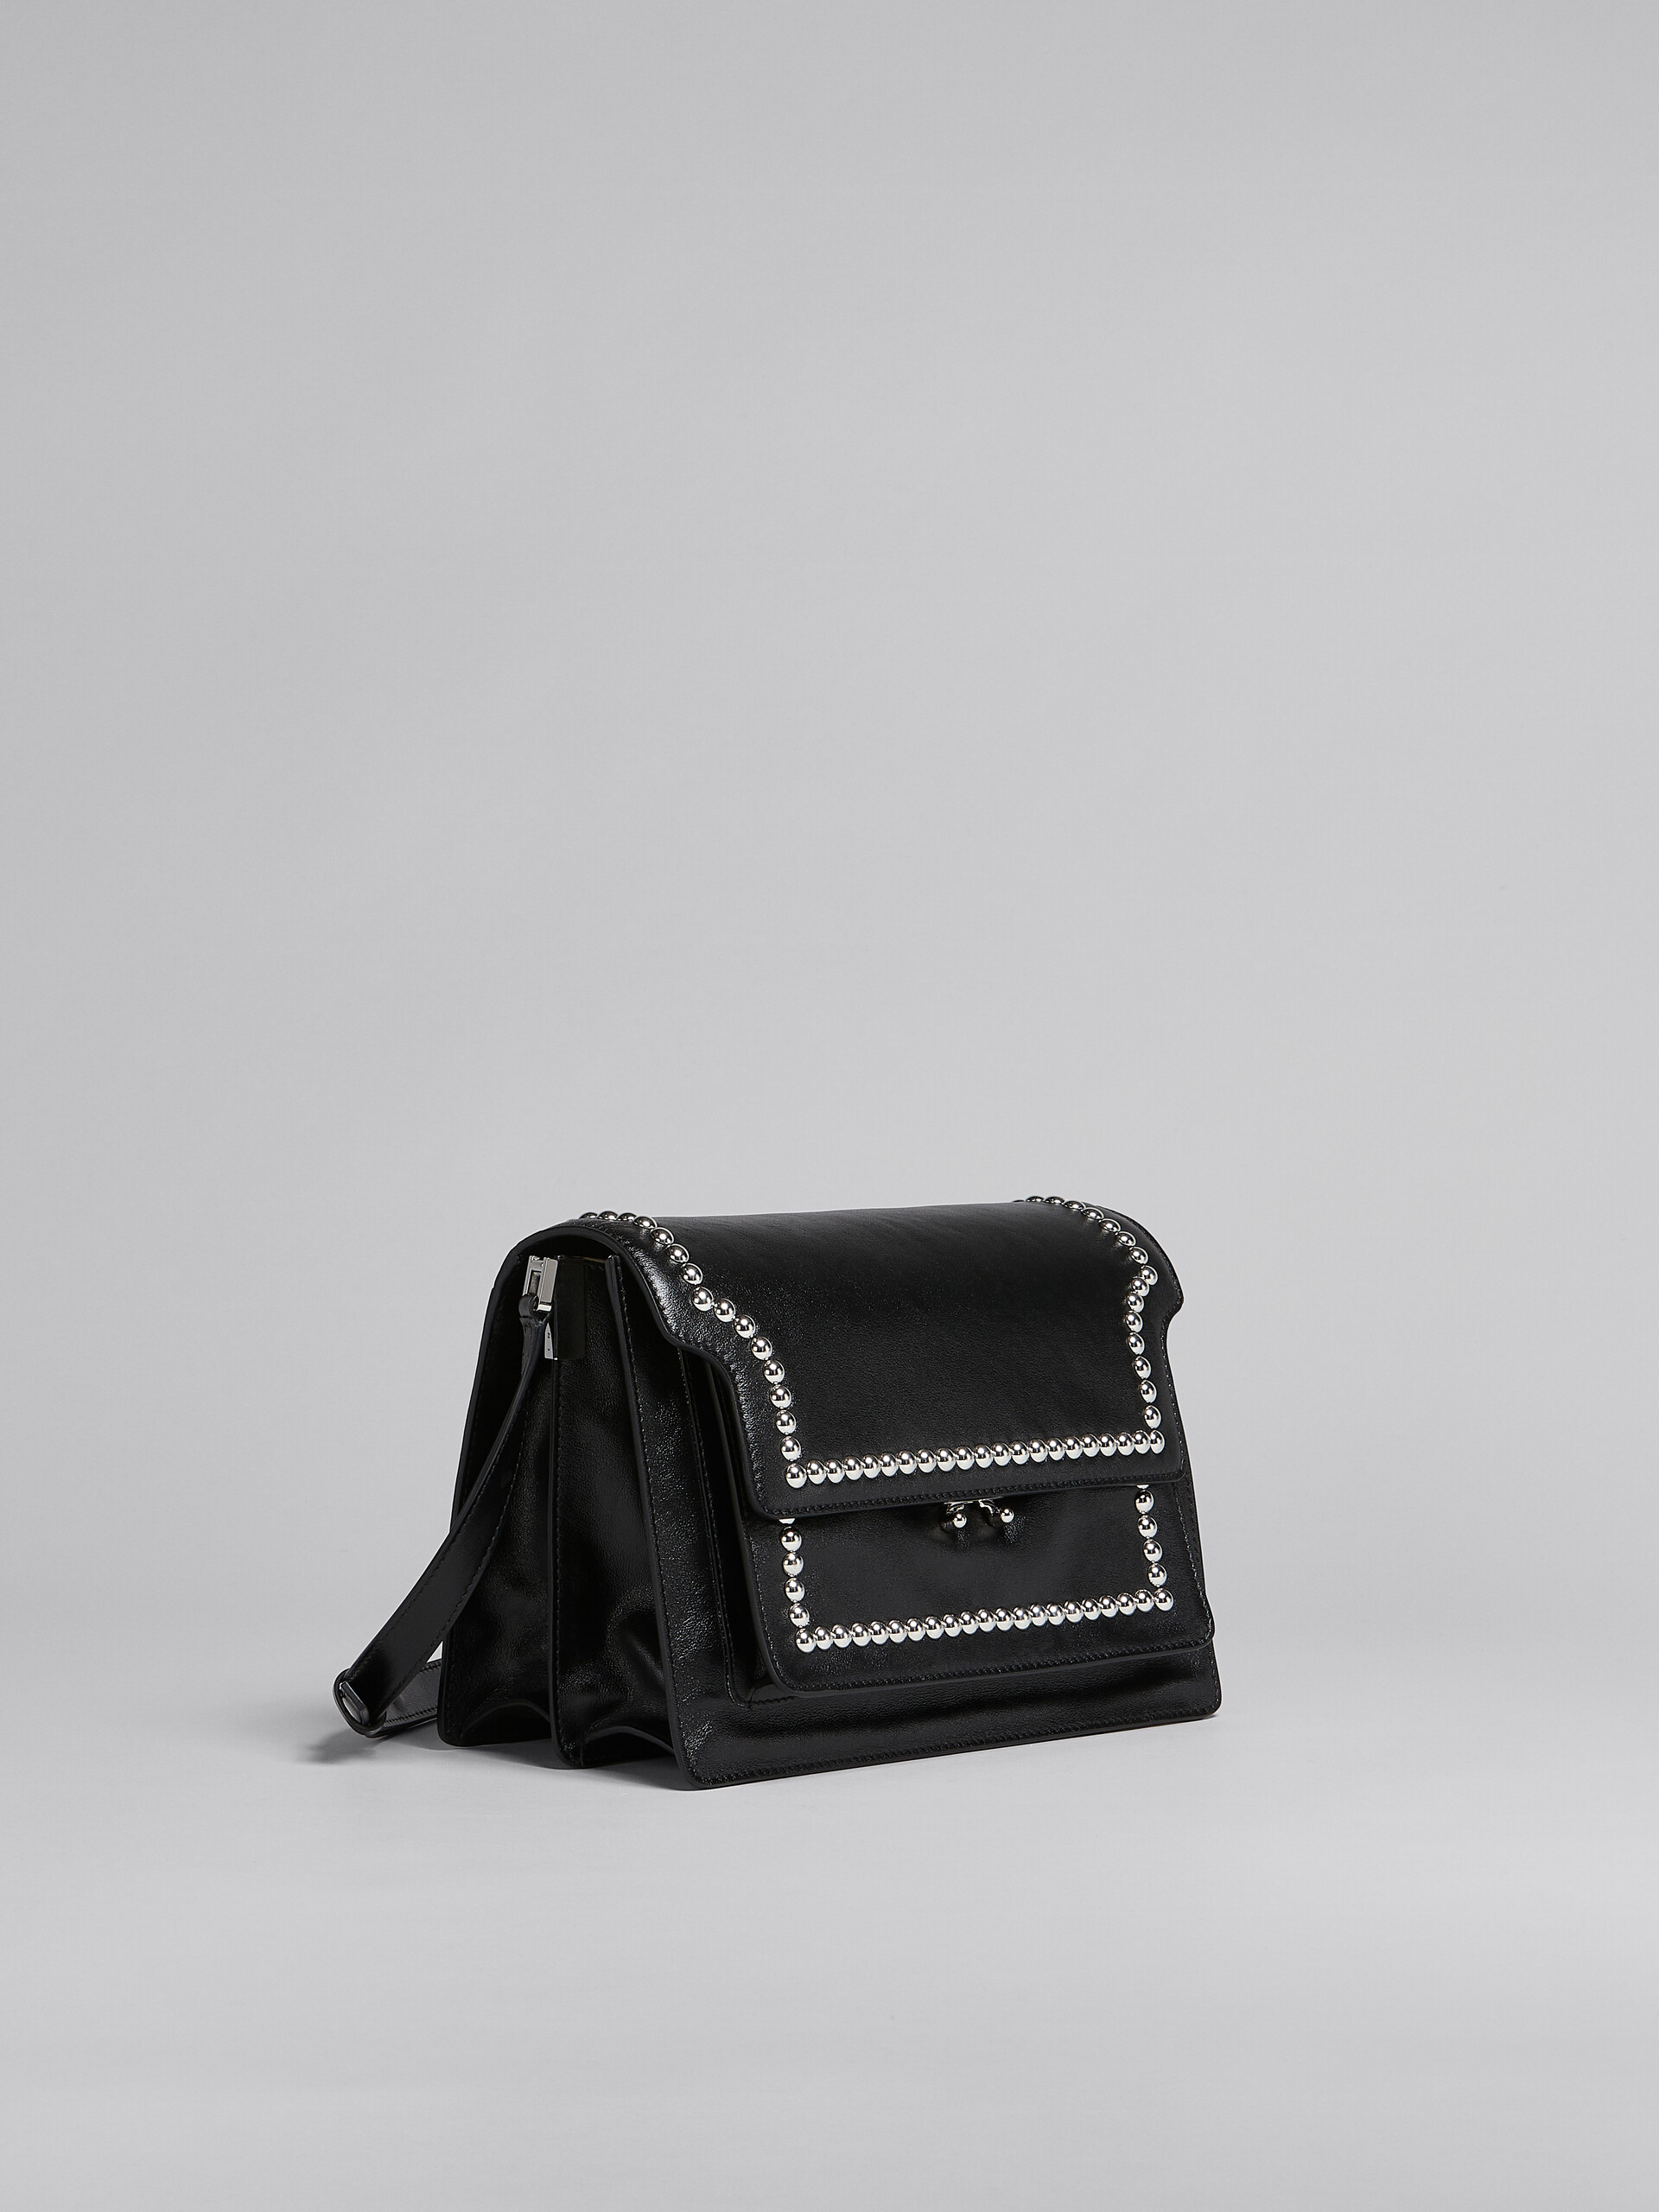 Trunk Soft Large Bag in black leather with studs - Shoulder Bag - Image 6